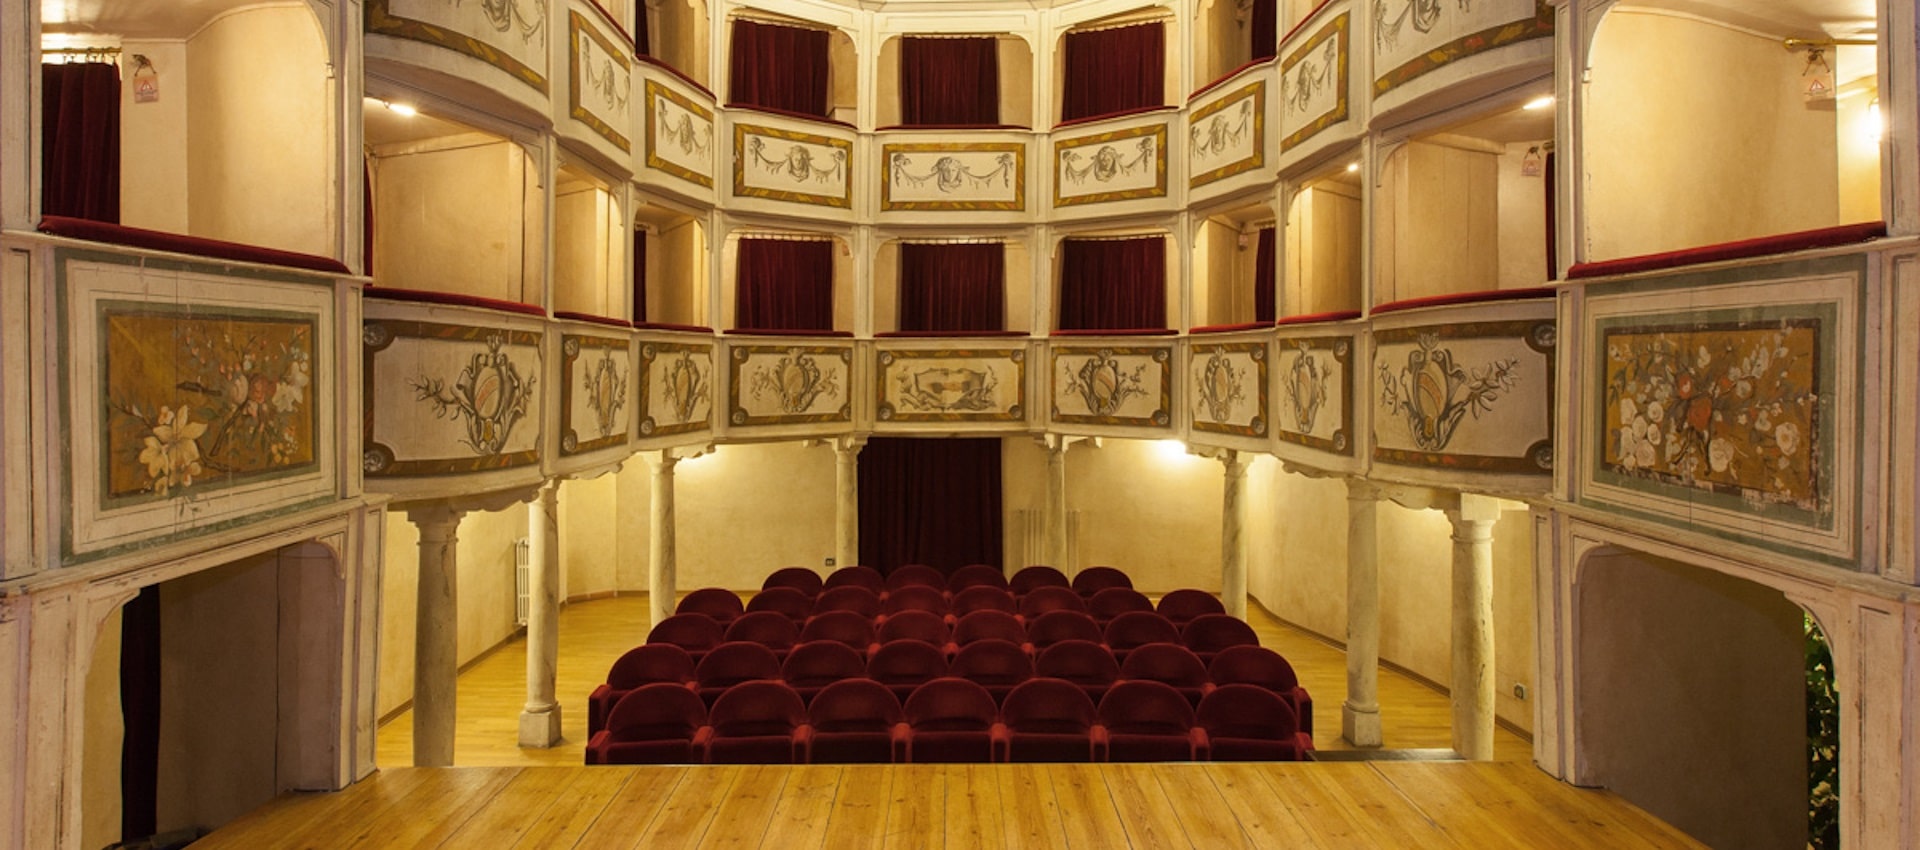 Teatro della Concordia, il teatro più piccolo del mondo